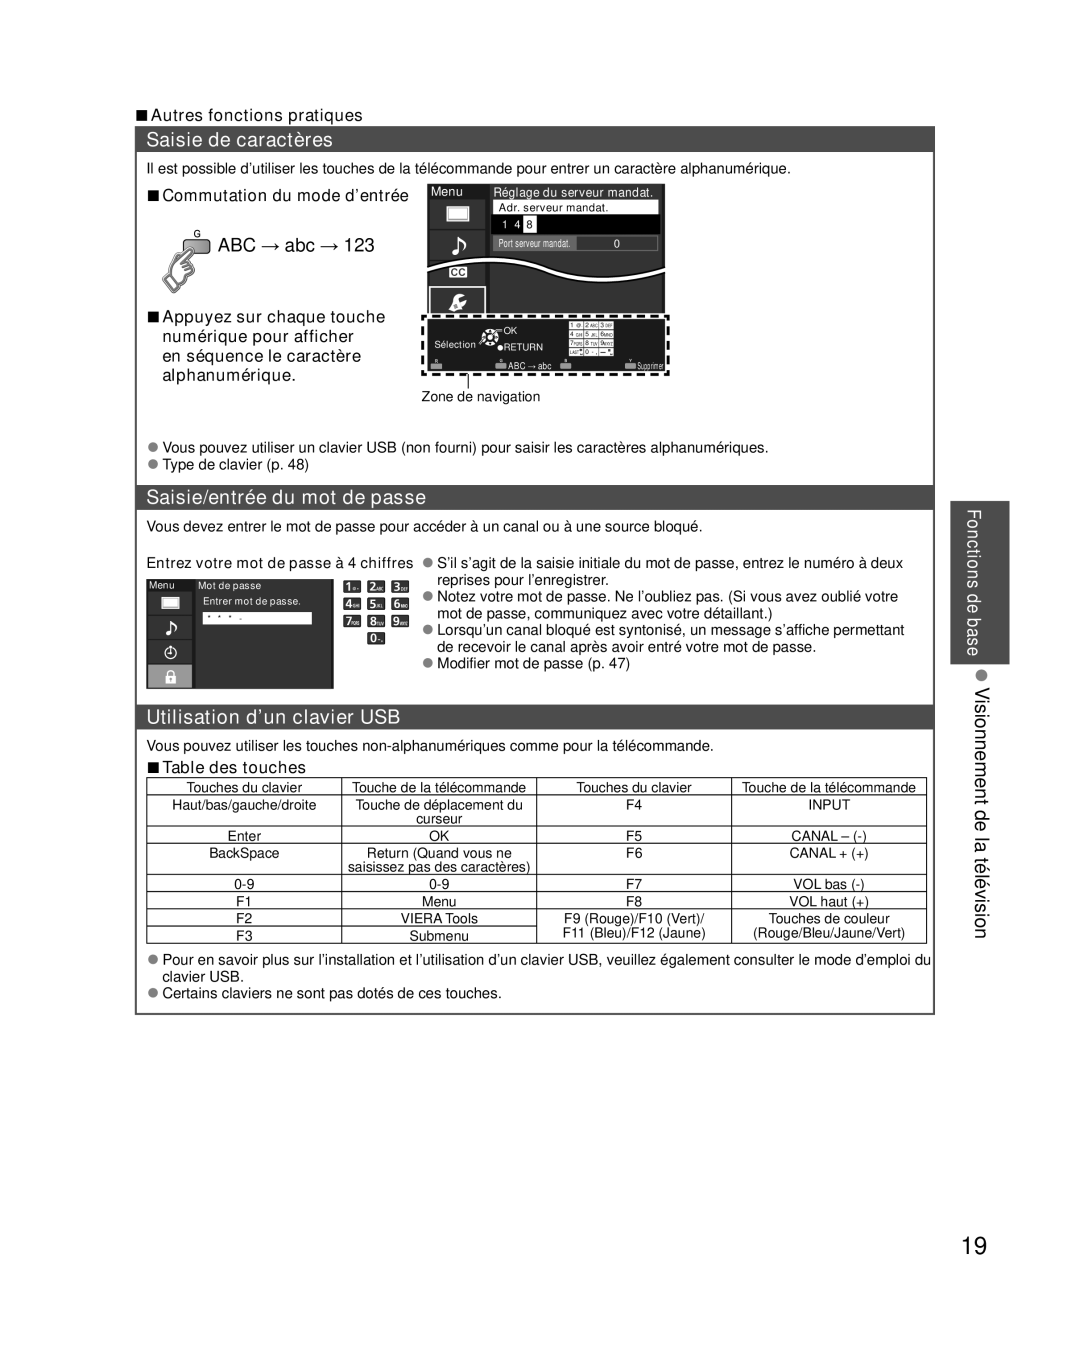 Panasonic TC-L42E30 Saisie de caractères, Saisie/entrée du mot de passe, Utilisation d’un clavier USB, ABC → abc → 